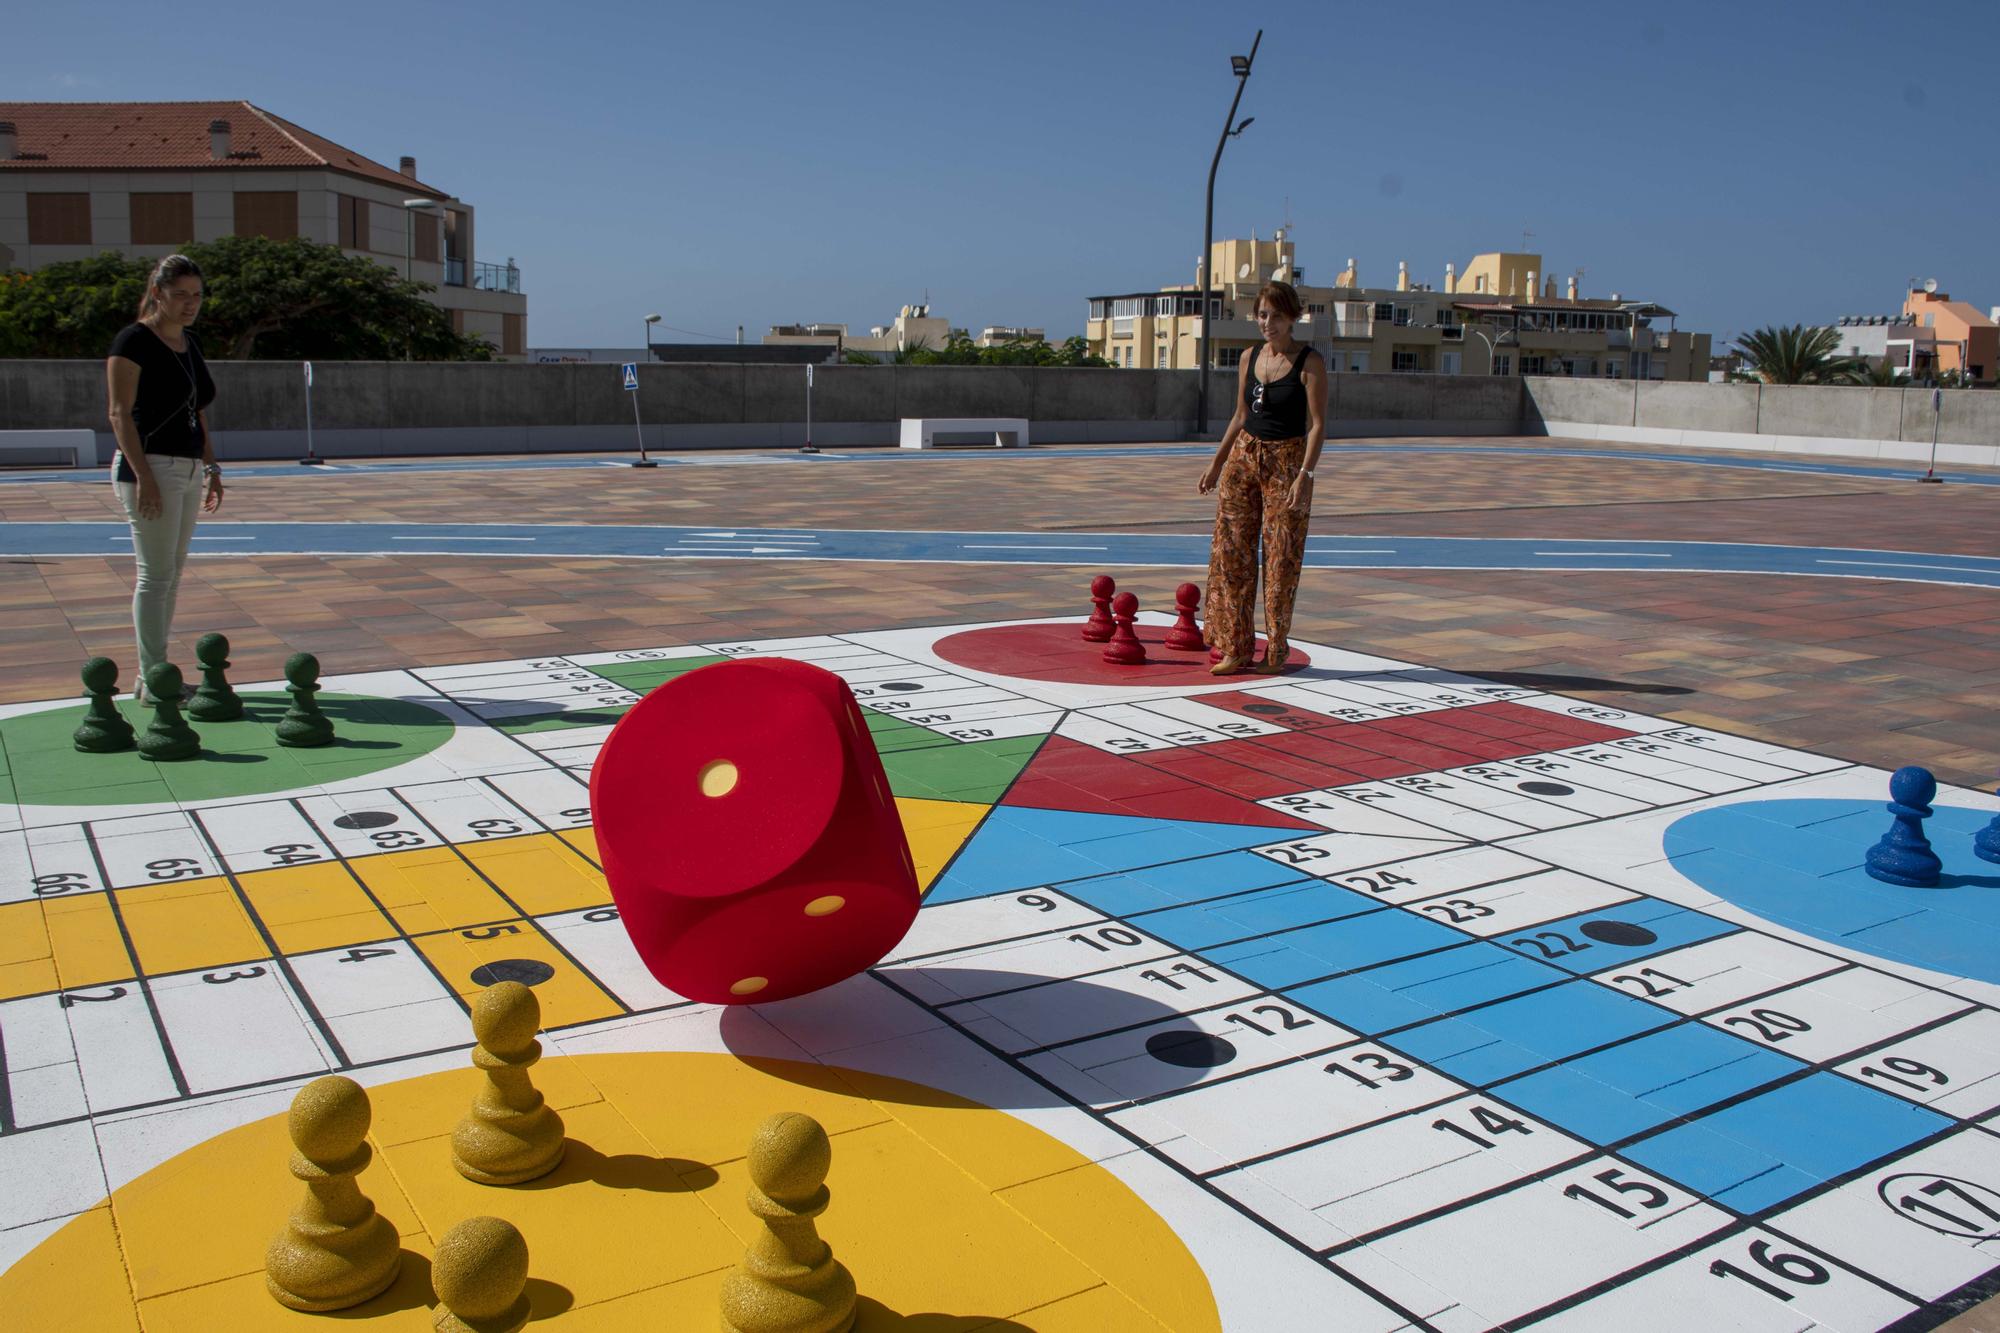 La alcaldesa y la concejala de Pol�tica Social  juegan al parch�s gigante de la plaza p�blica.jpg